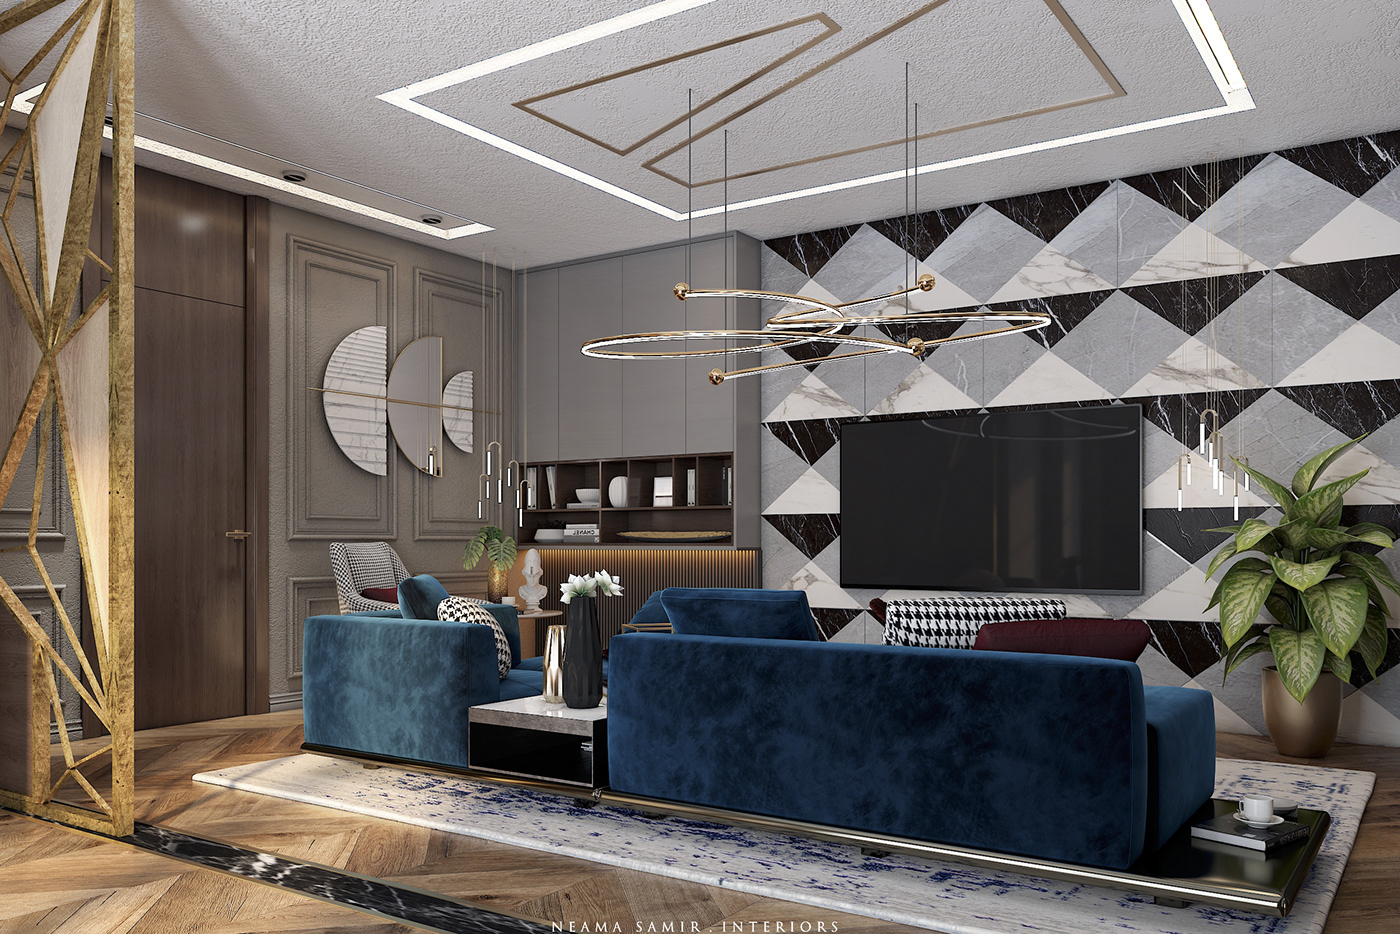 area blue contemorary design Interior living modern mood board velvet Villa